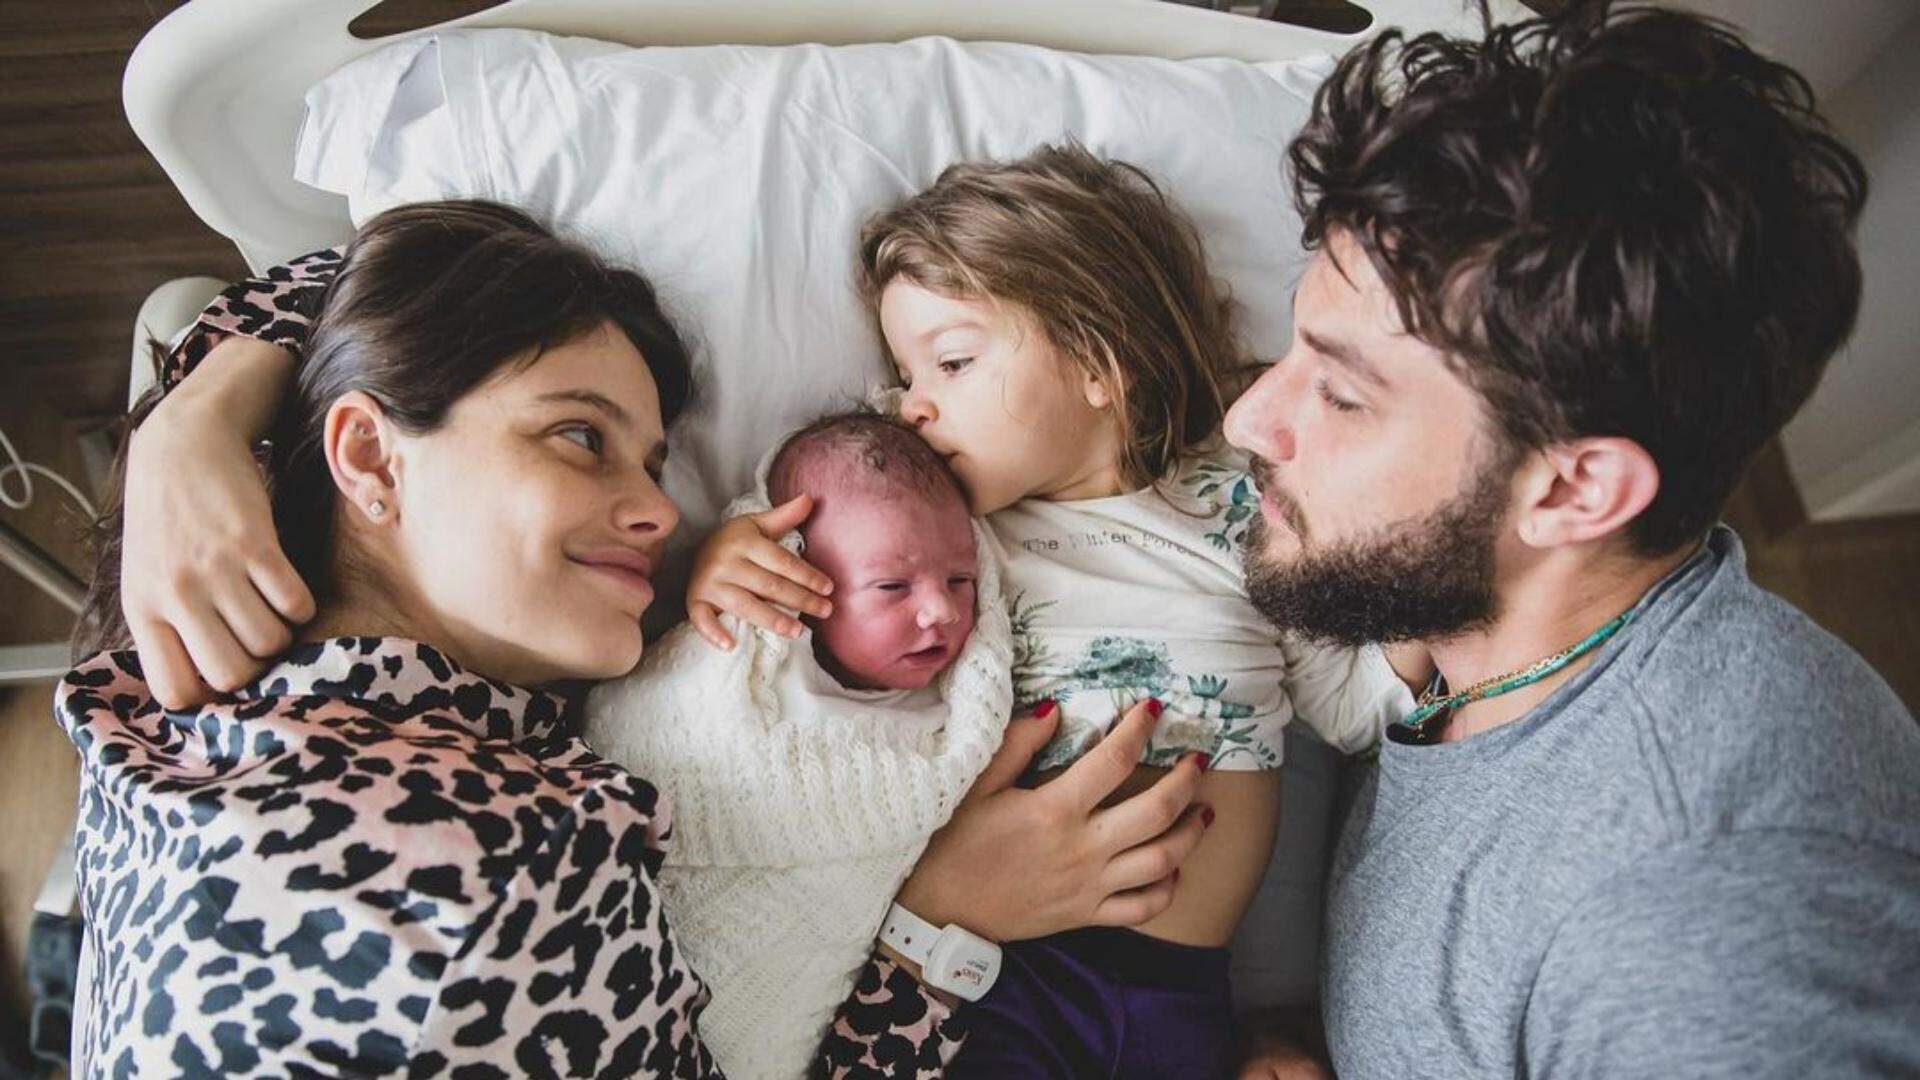 Laura Neiva desabafa sobre rotina de sono na maternidade: “Filho, tenha piedade da mamãe” - Metropolitana FM